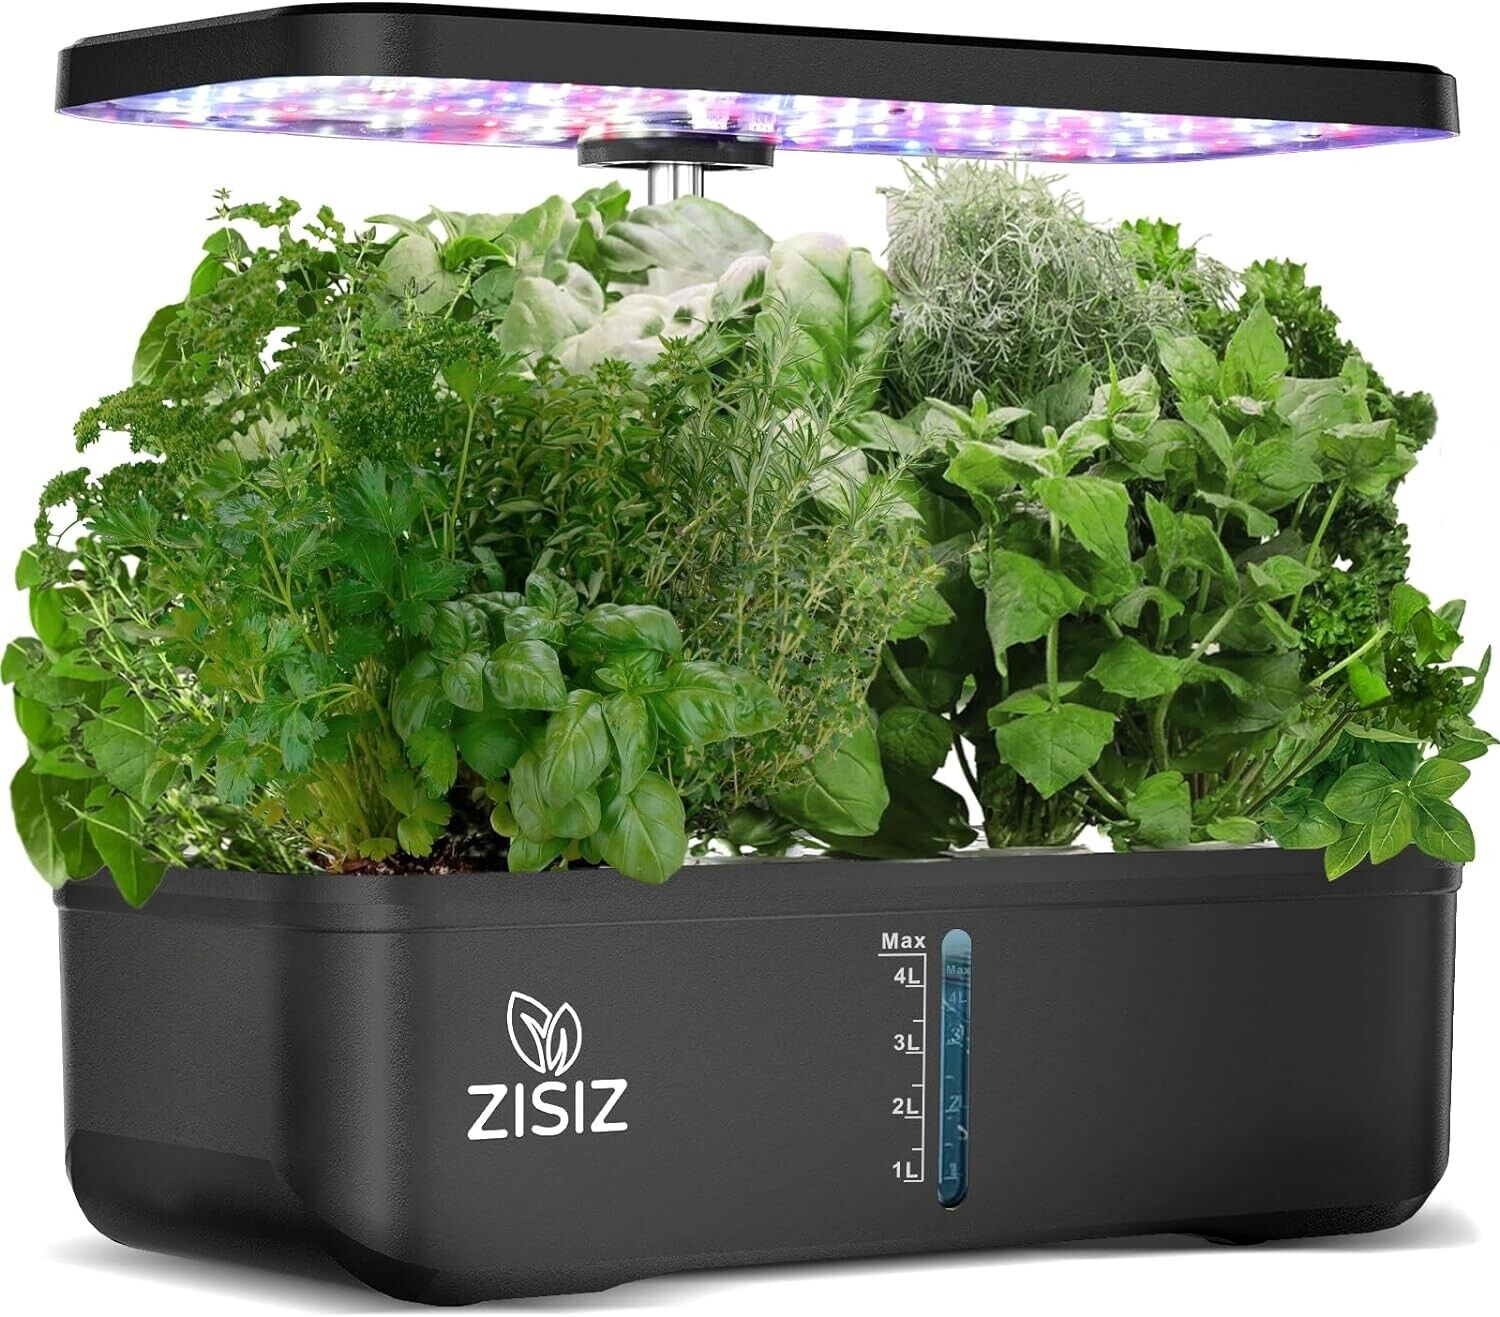 ZISIZ Hydroponics Growing System Indoor Garden Kit 12Pods Indoor Herb Garden New